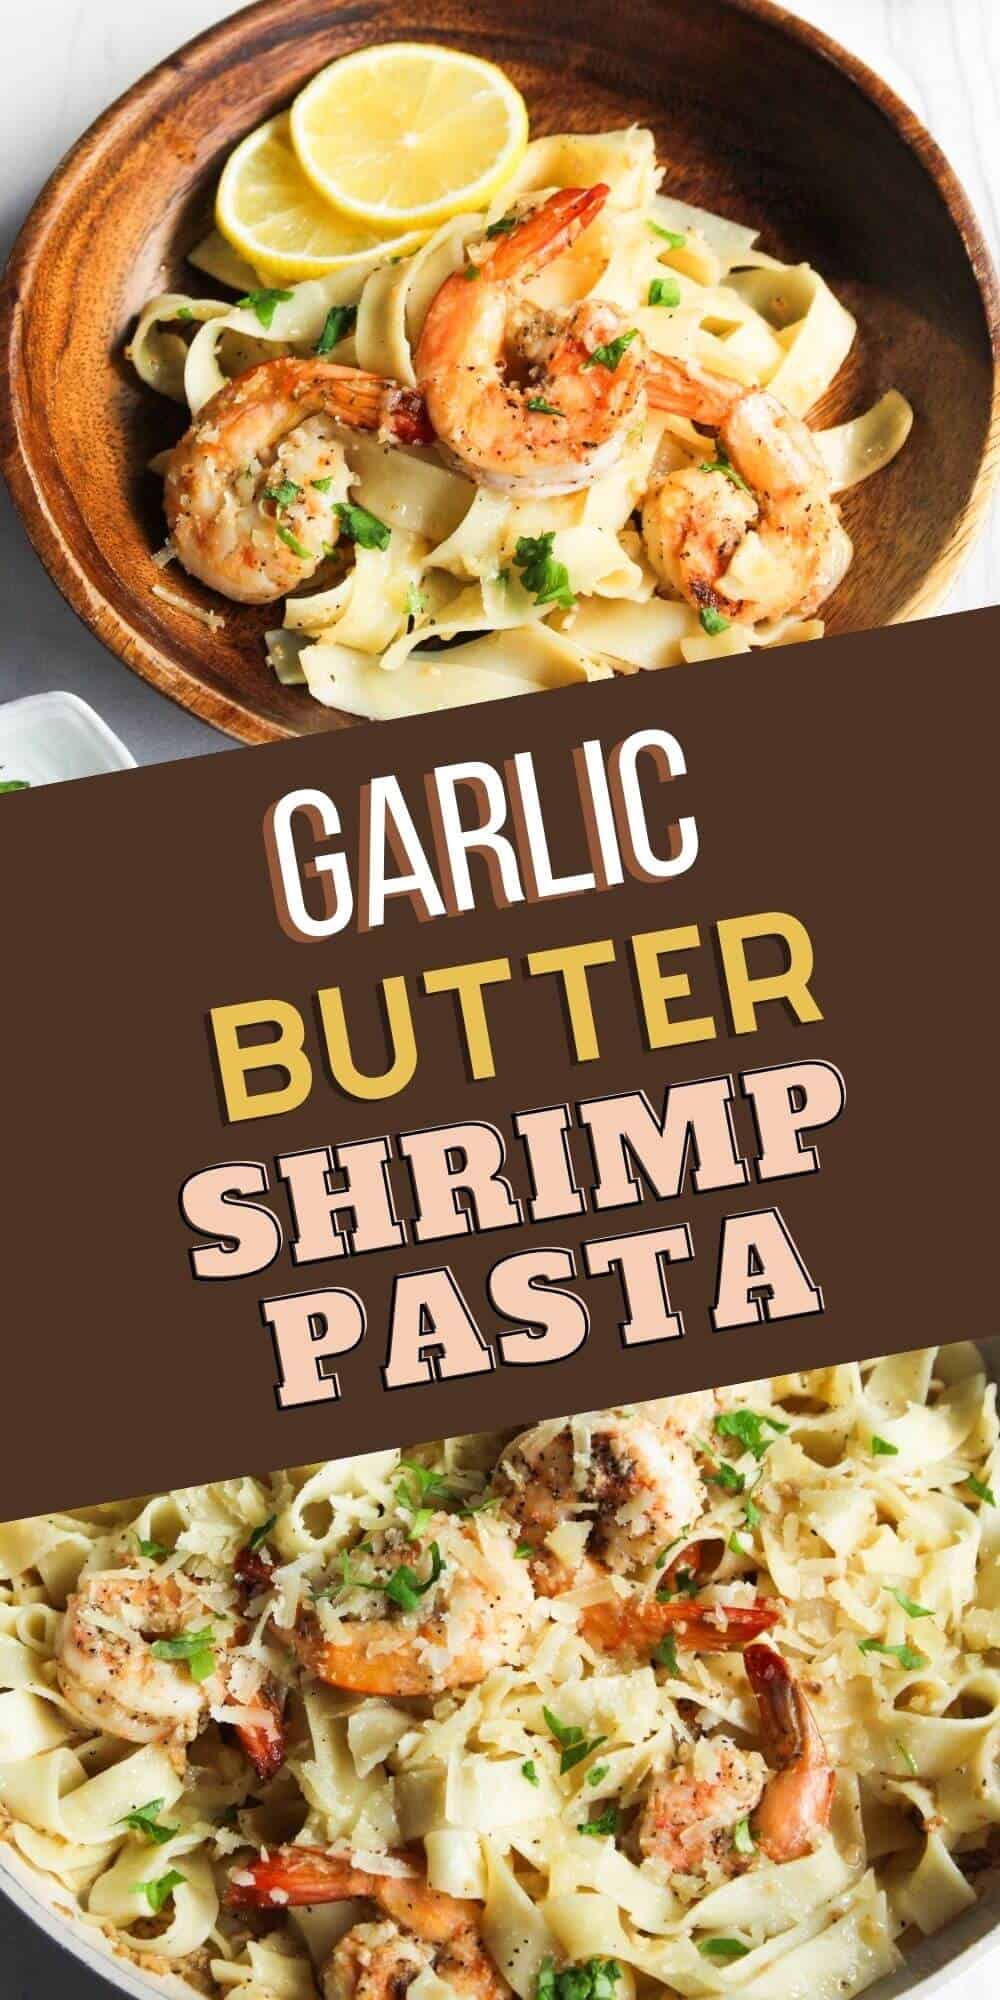 Garlic butter shrimp pasta.